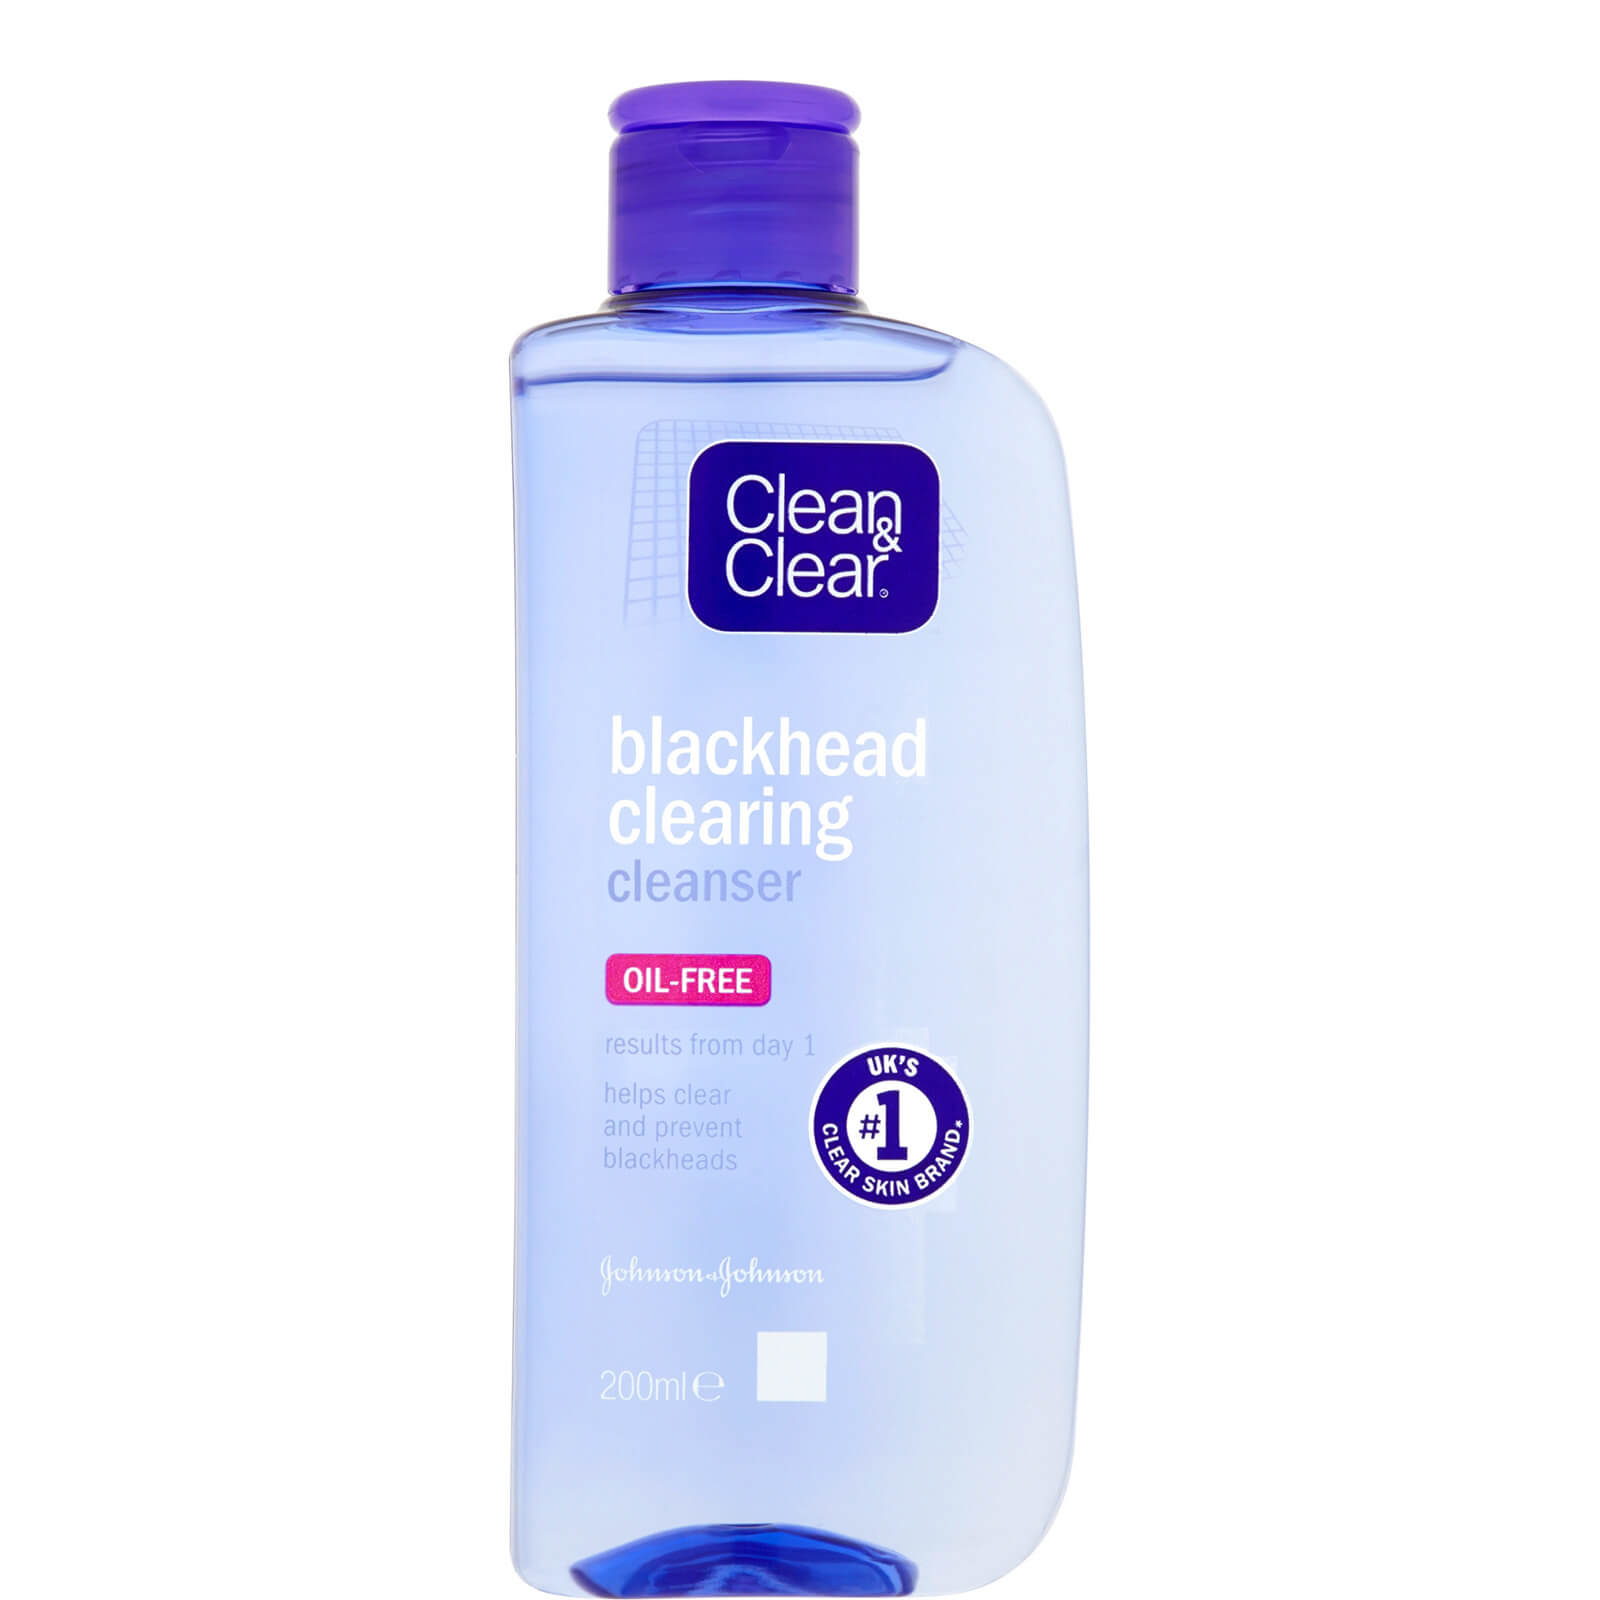 Clean&Clear Blackhead Clearing Cleanser 200ml